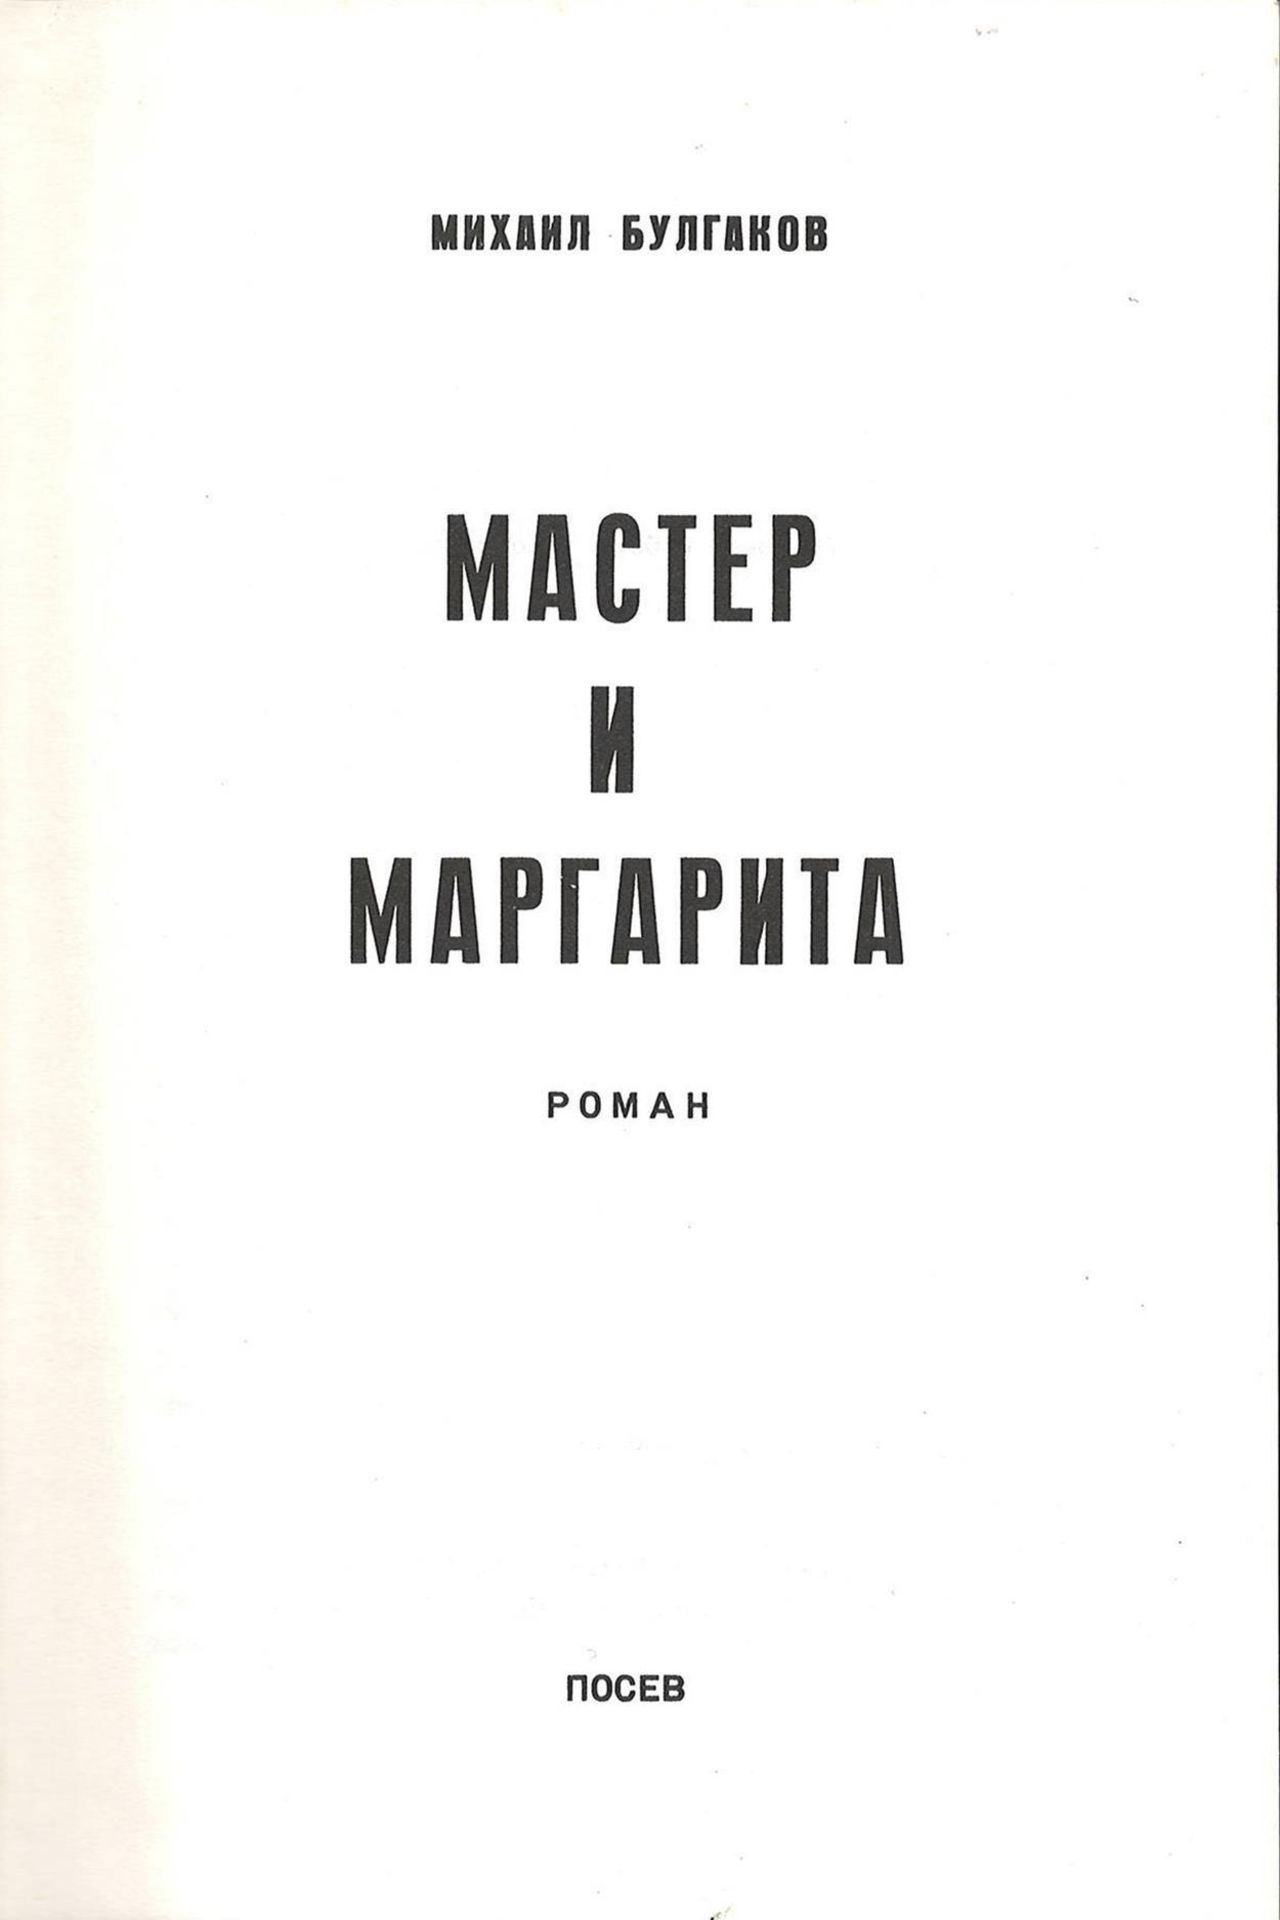 Bulgakov, M. The Master and Margarita: Novel / Mikhail Bulgakov; Illustrated cover by R.M. - 2d - Bild 3 aus 3